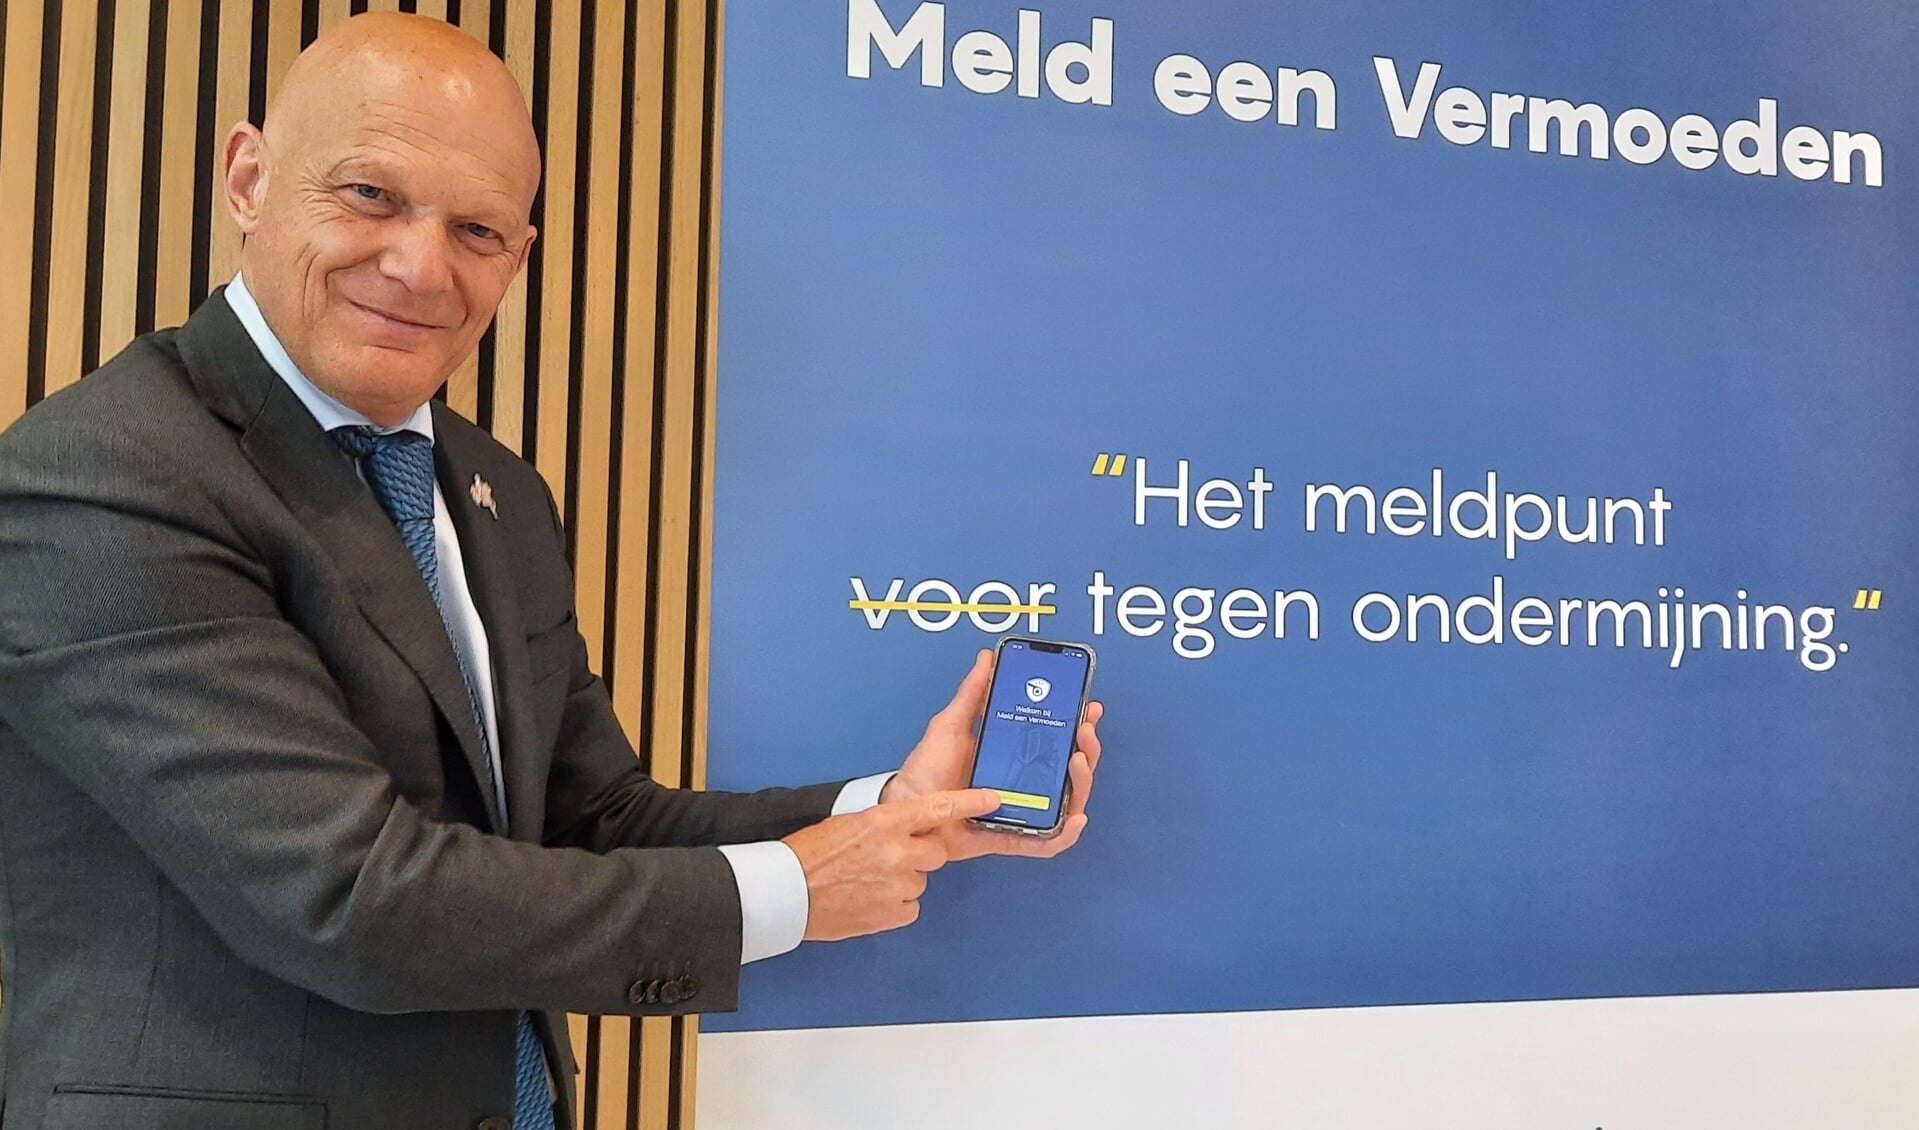 Burgemeester Bert Wijbenga installeerde afgelopen maandagmiddag als eerste de app Meld een Vermoeden om de veiligheid in Vlaardingen te verbeteren.